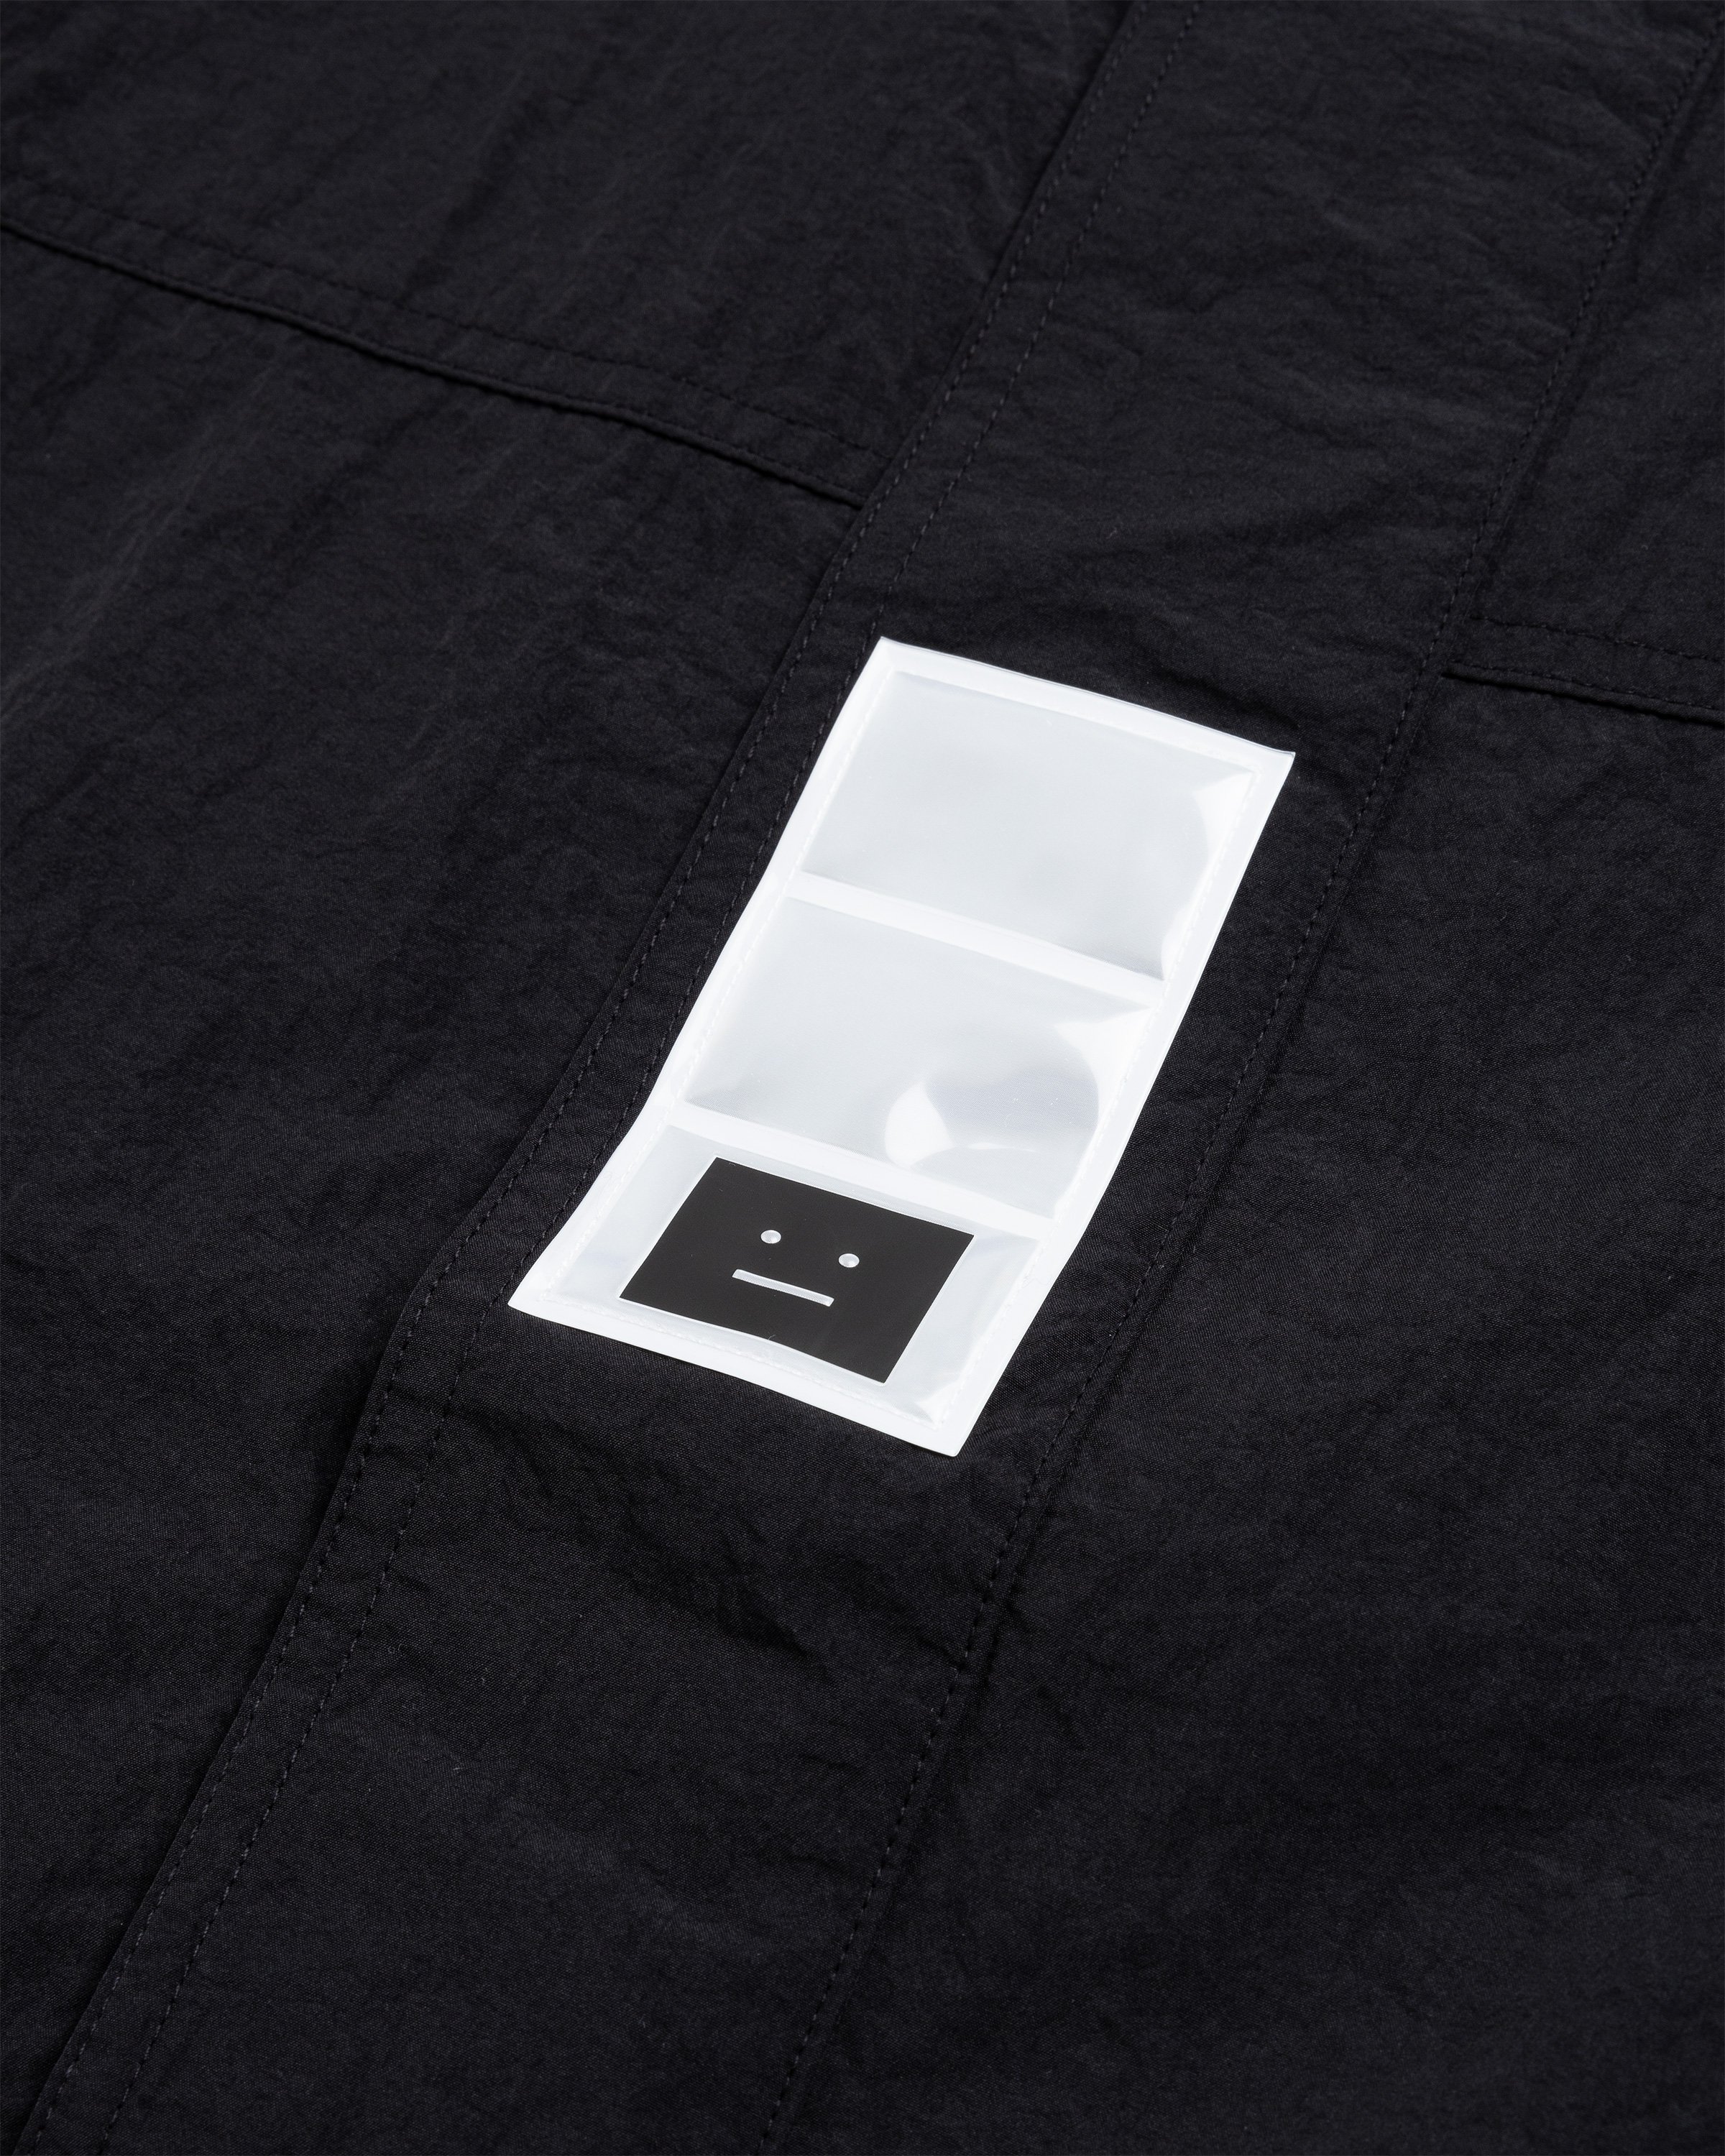 Acne Studios - Nylon Hooded Jacket Black - Clothing - Black - Image 6